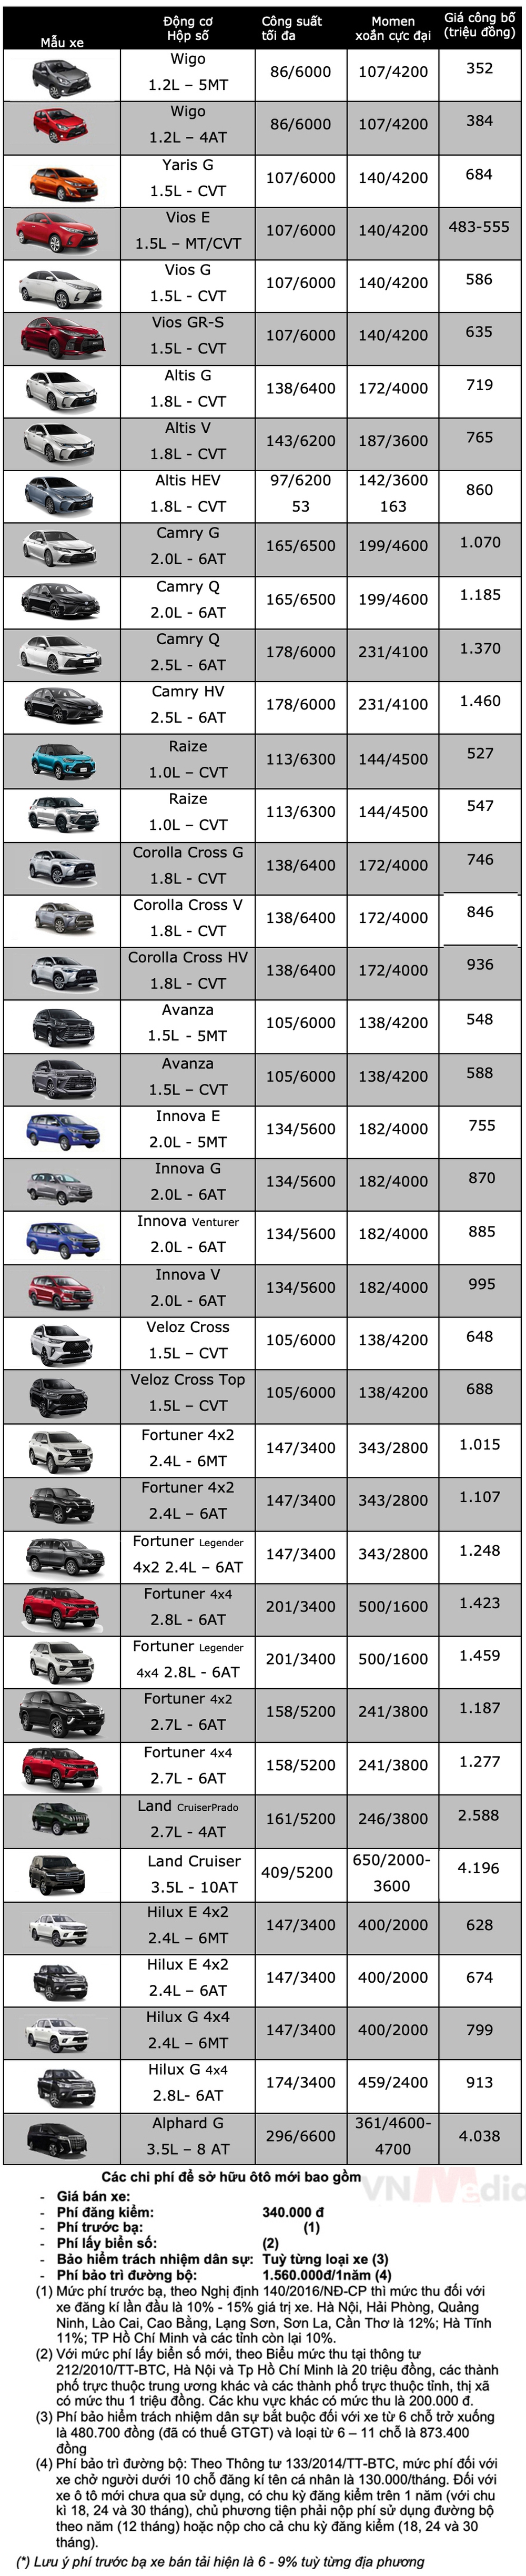 Bảng giá xe Toyota tháng 3: Toyota Vios được ưu đãi gần 40 triệu đồng - Ảnh 2.